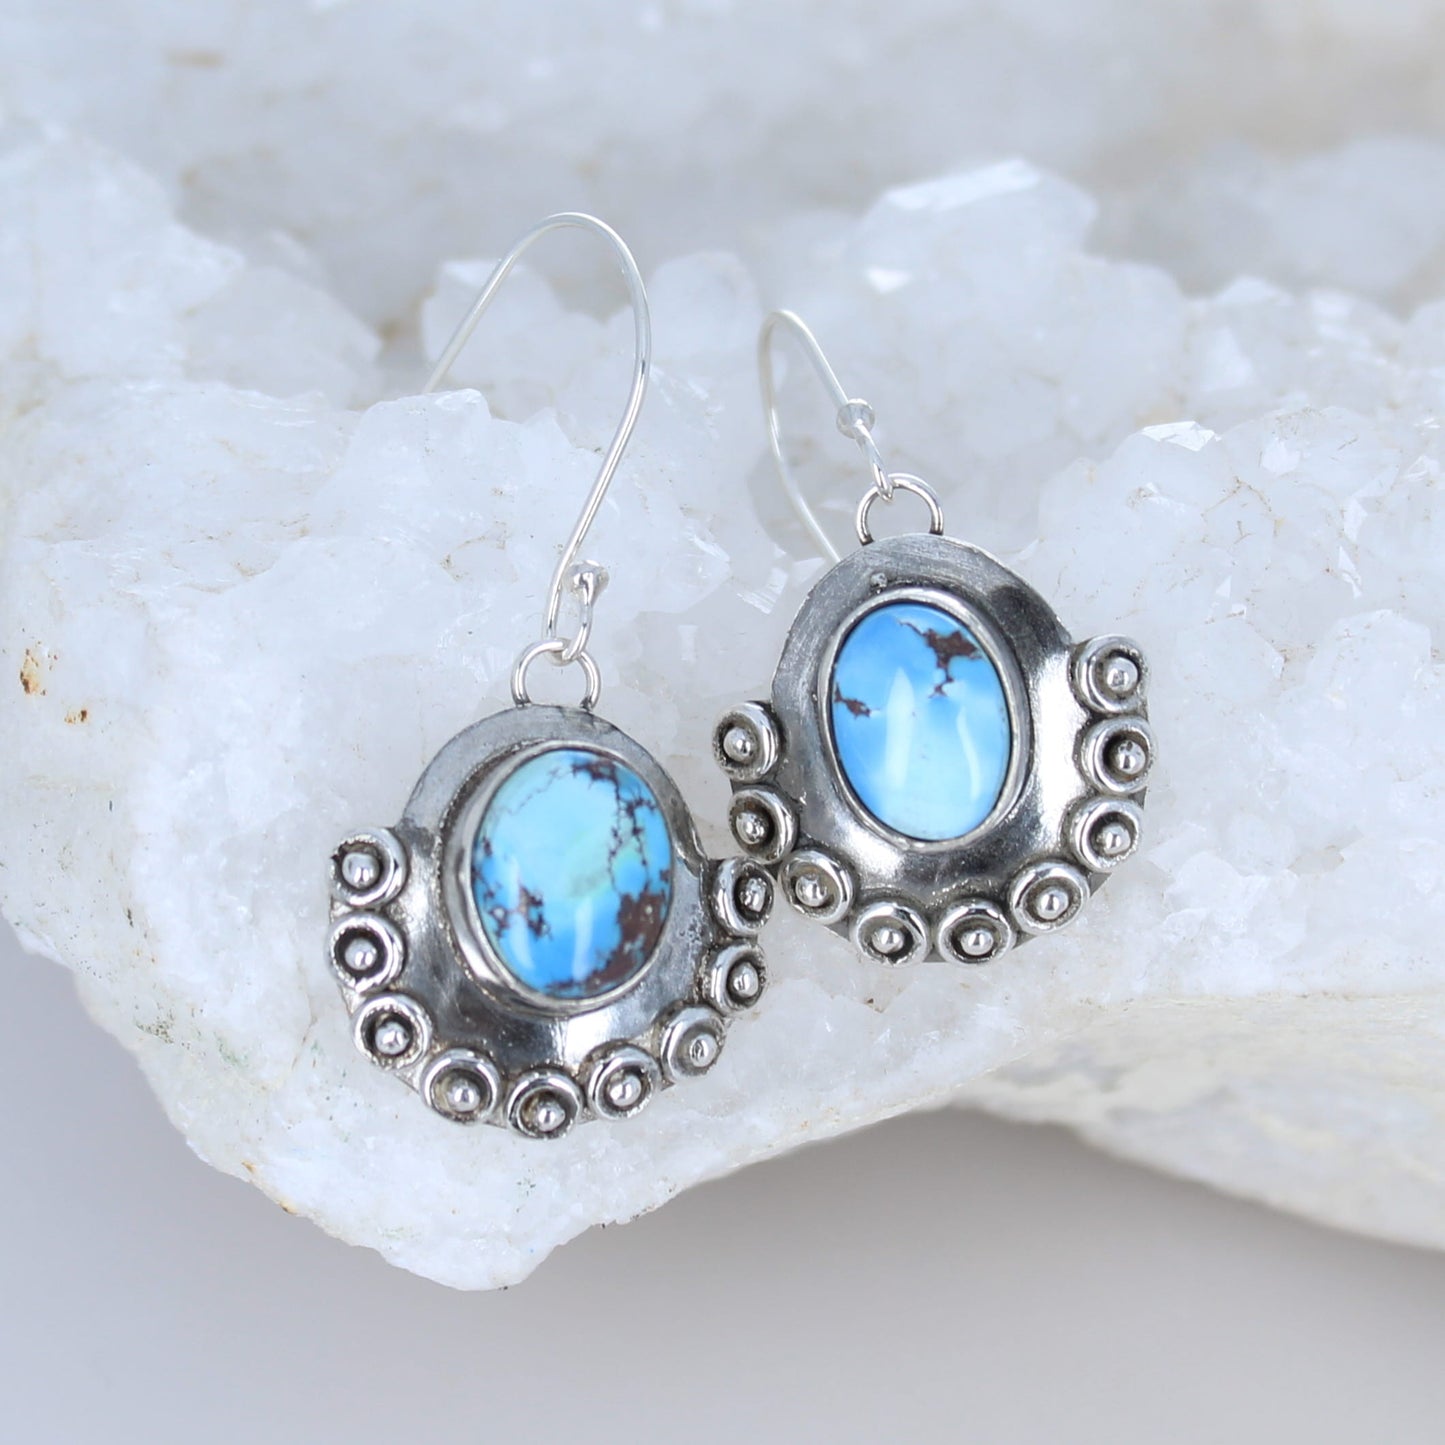 Kazakhstan Turquoise Boho Earrings Sterling Silver Drops